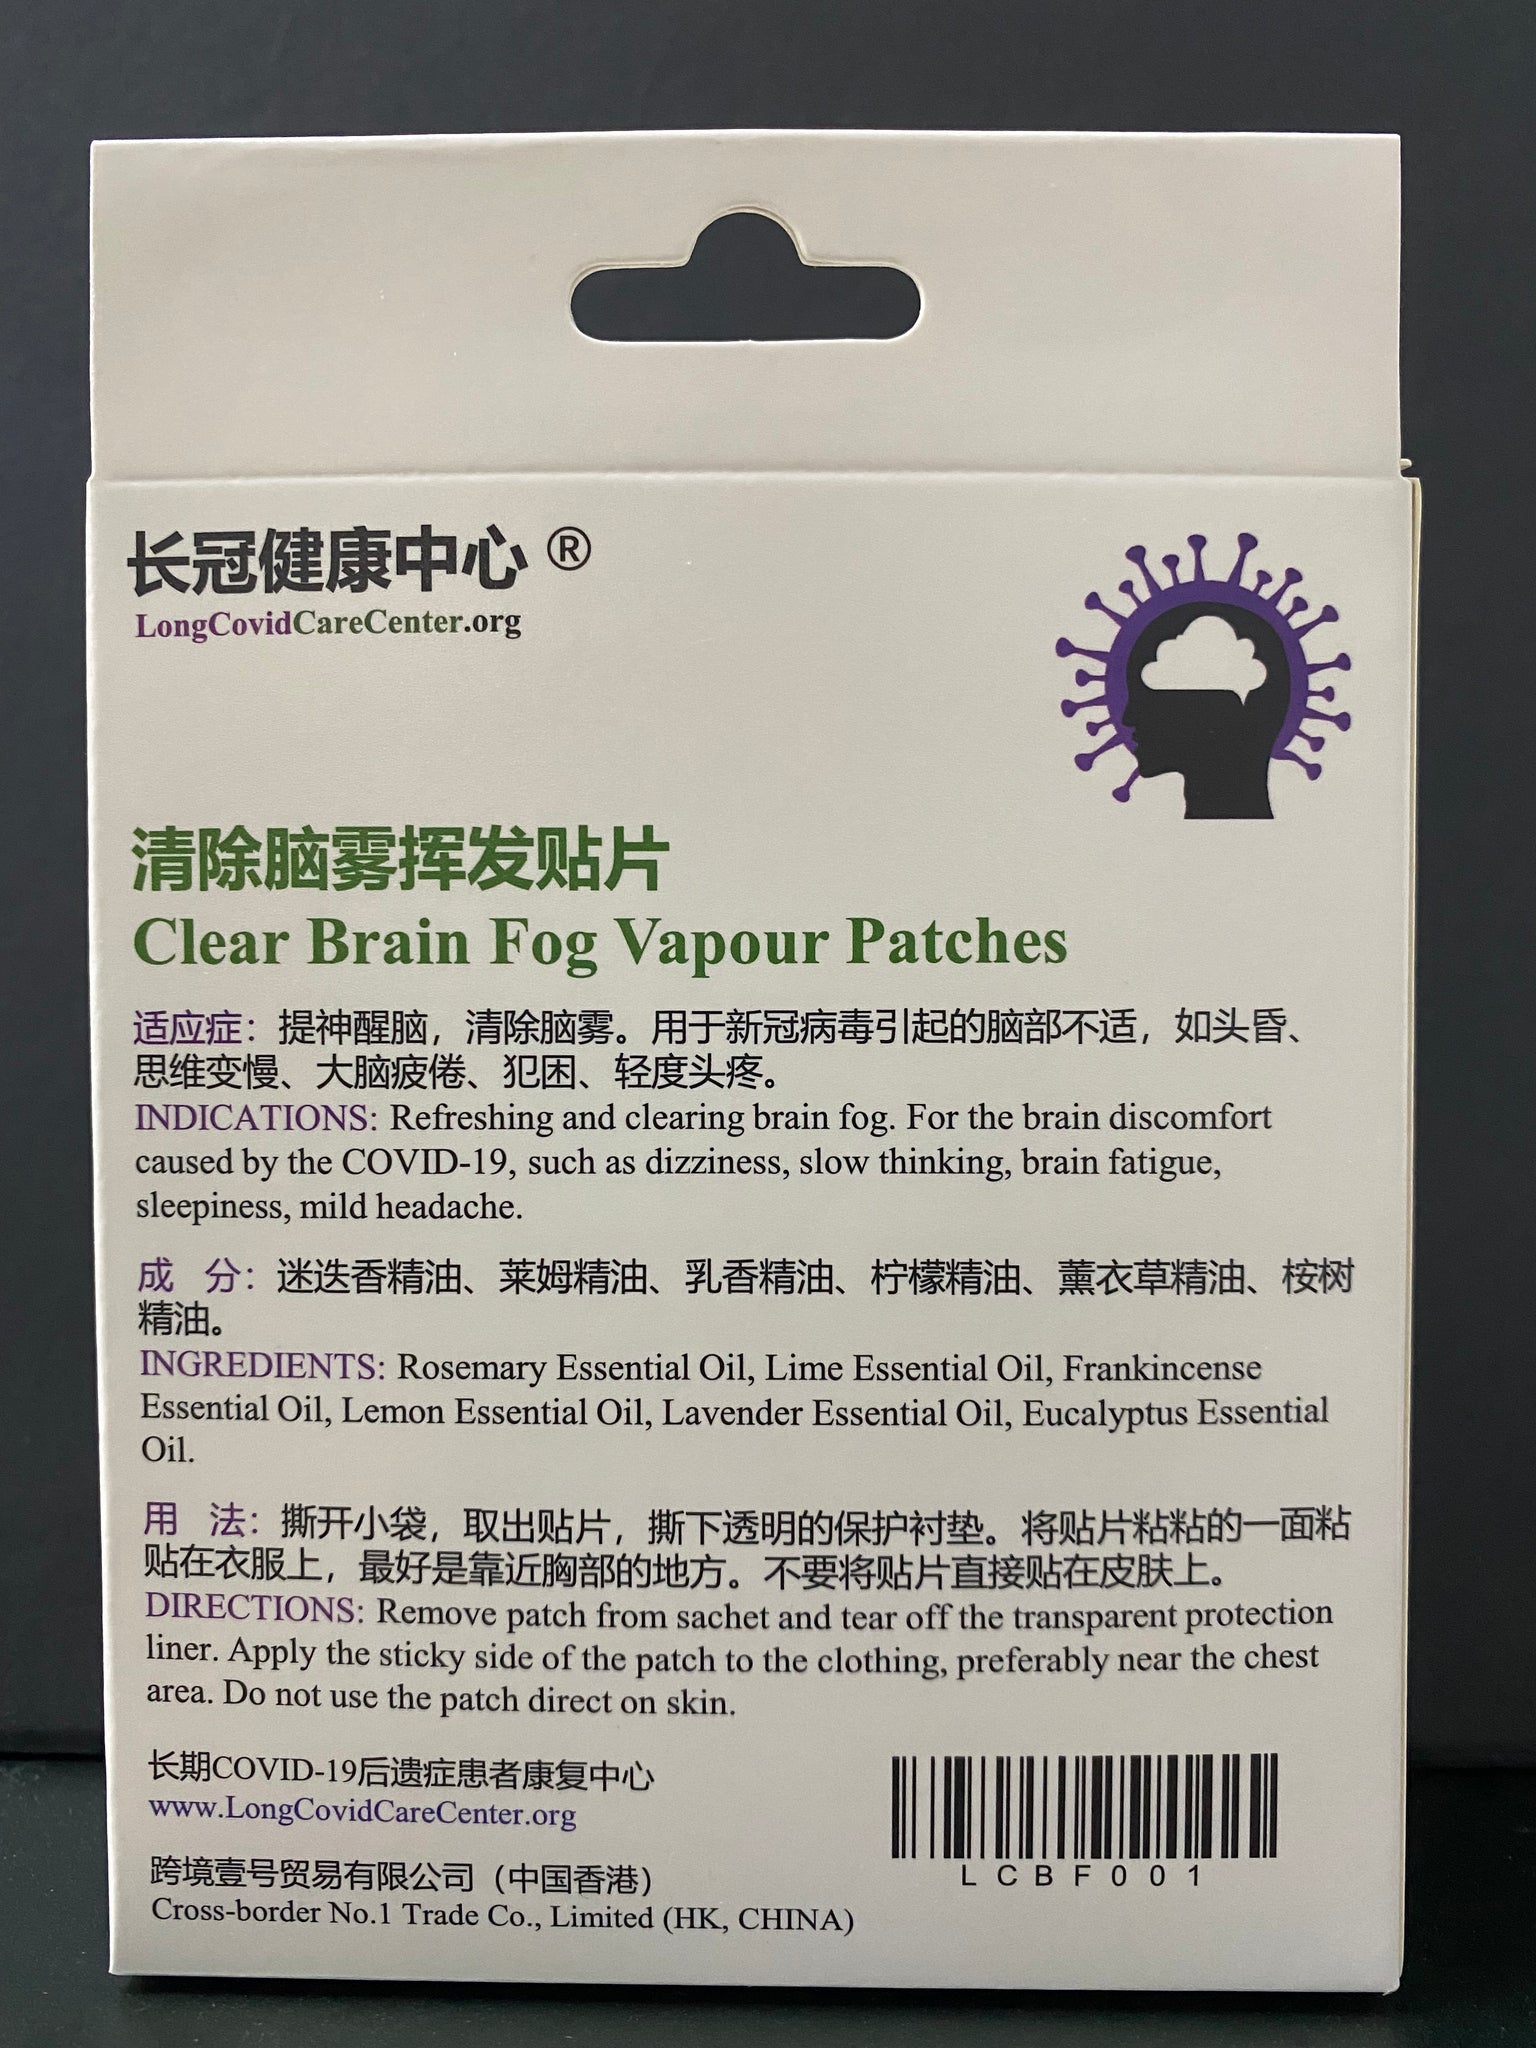 Clear Brain Fog Vapour Patches